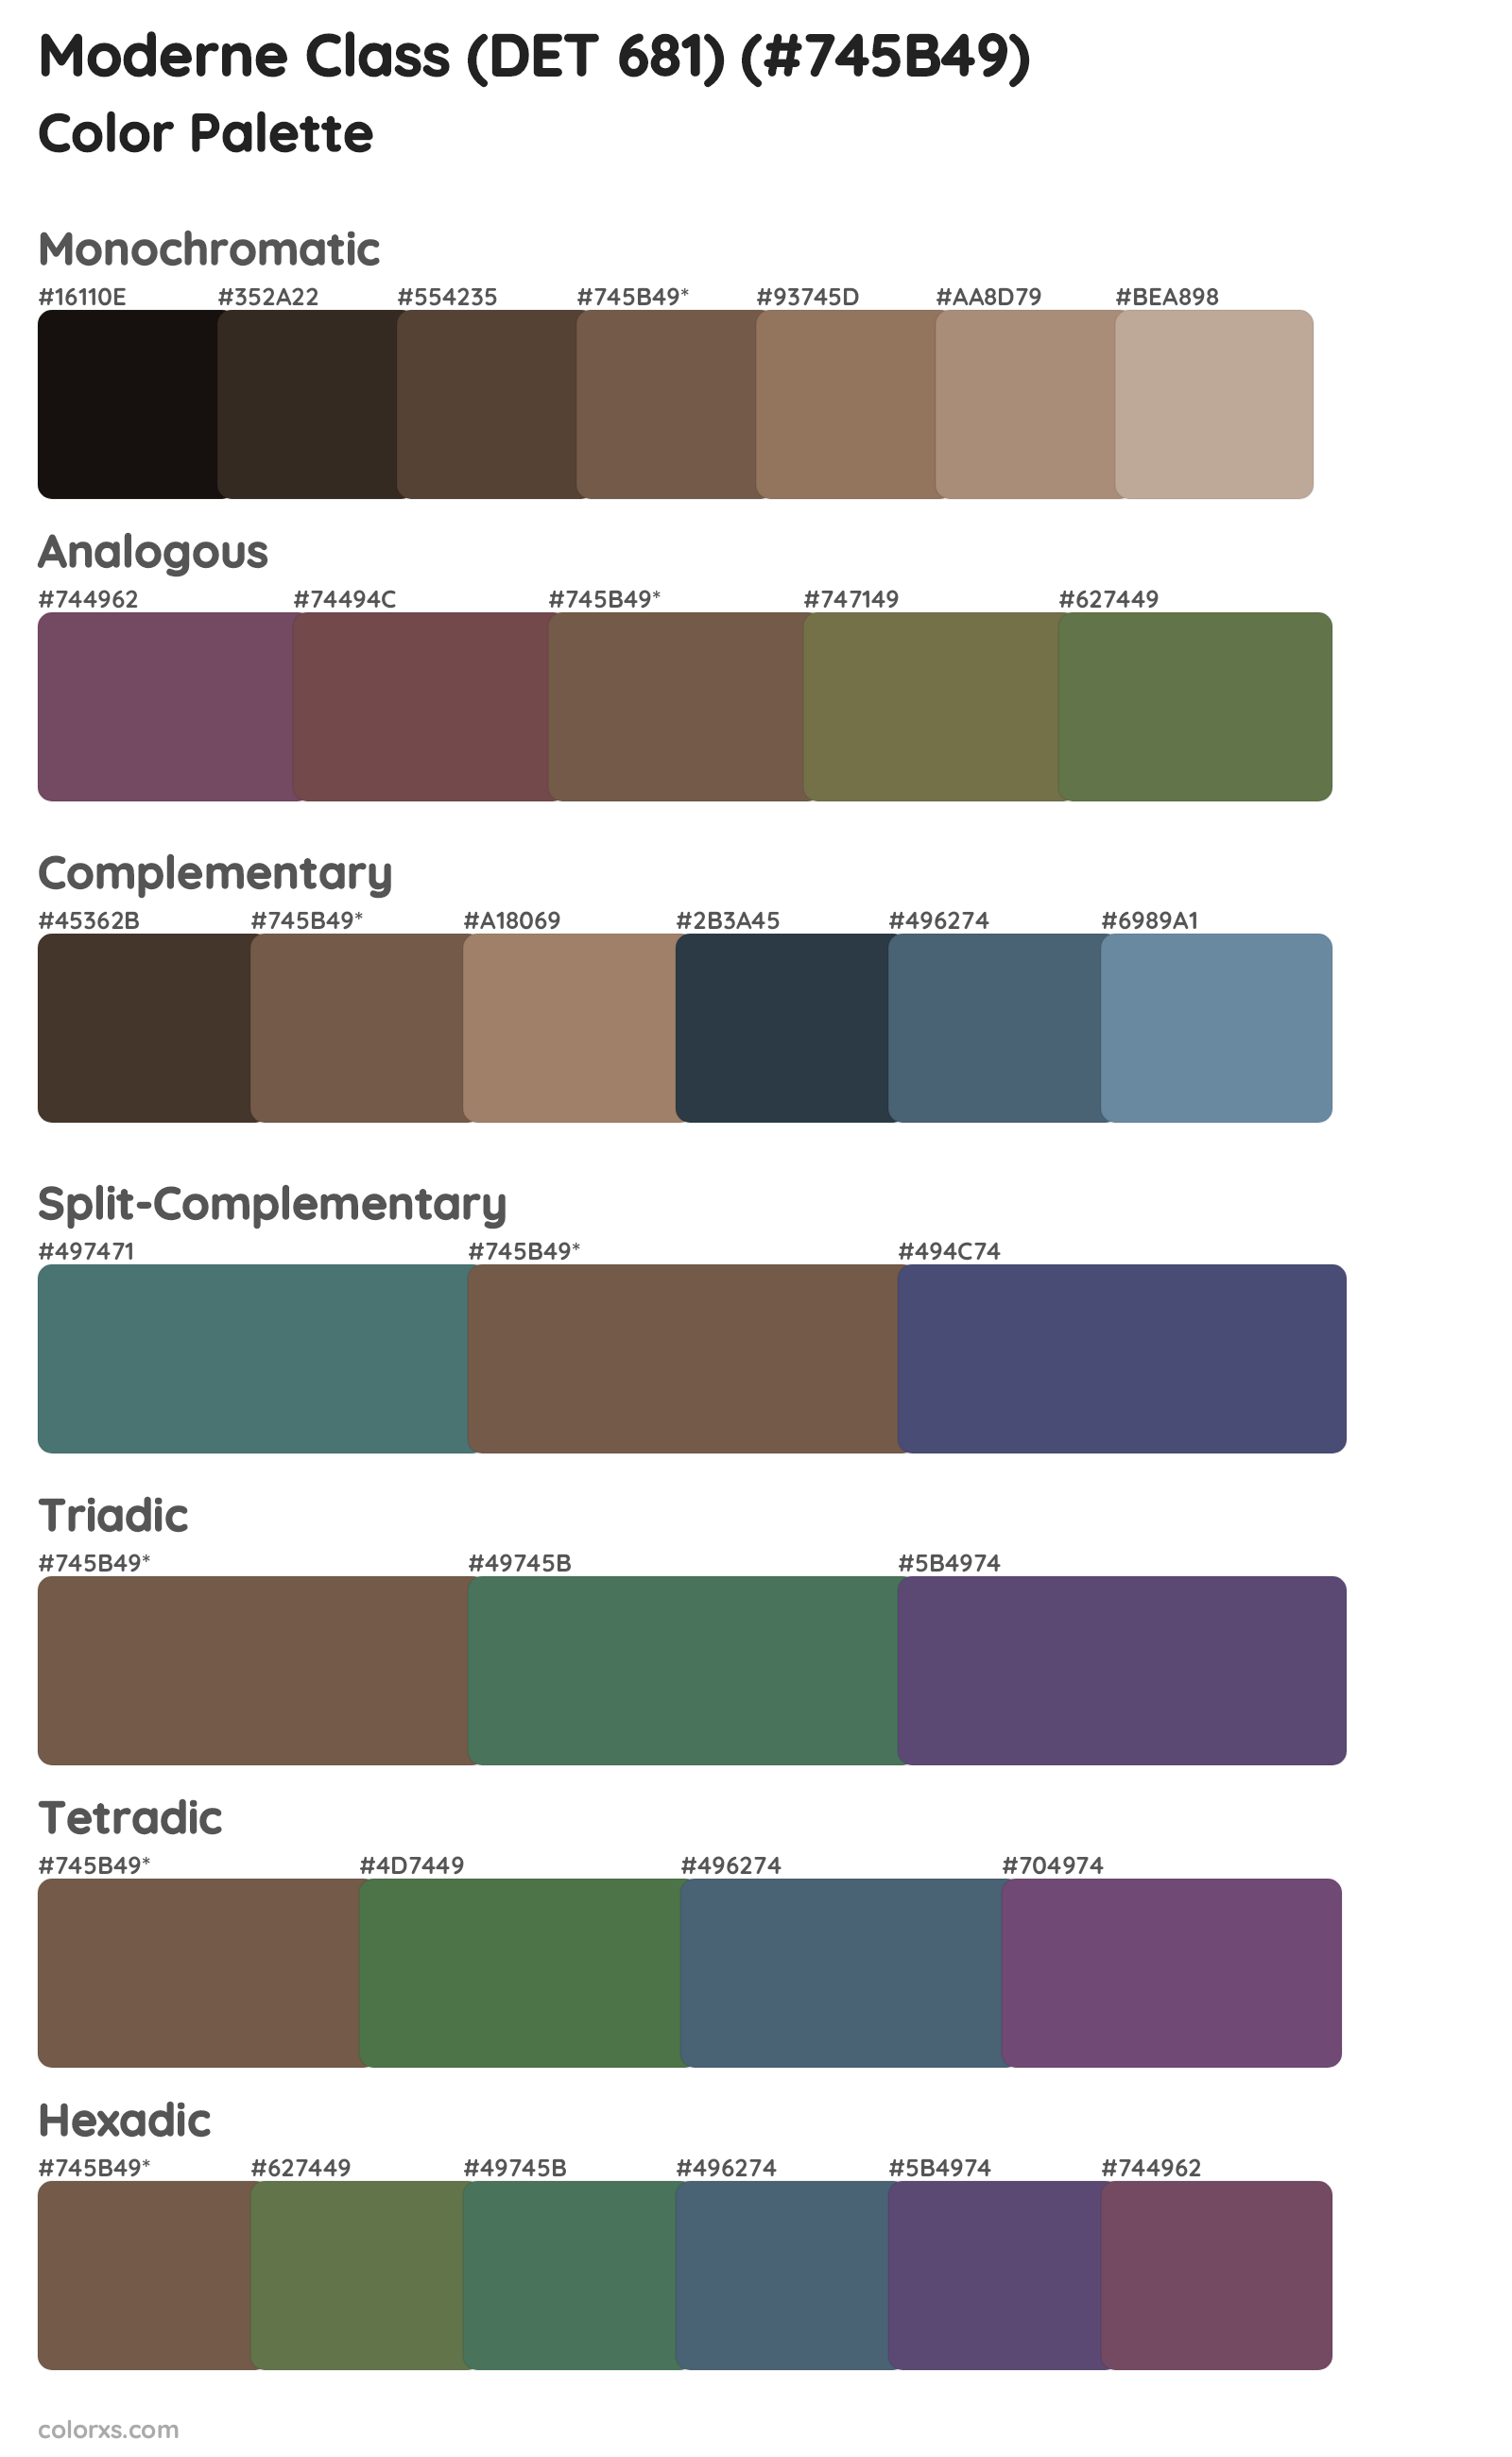 Moderne Class (DET 681) Color Scheme Palettes